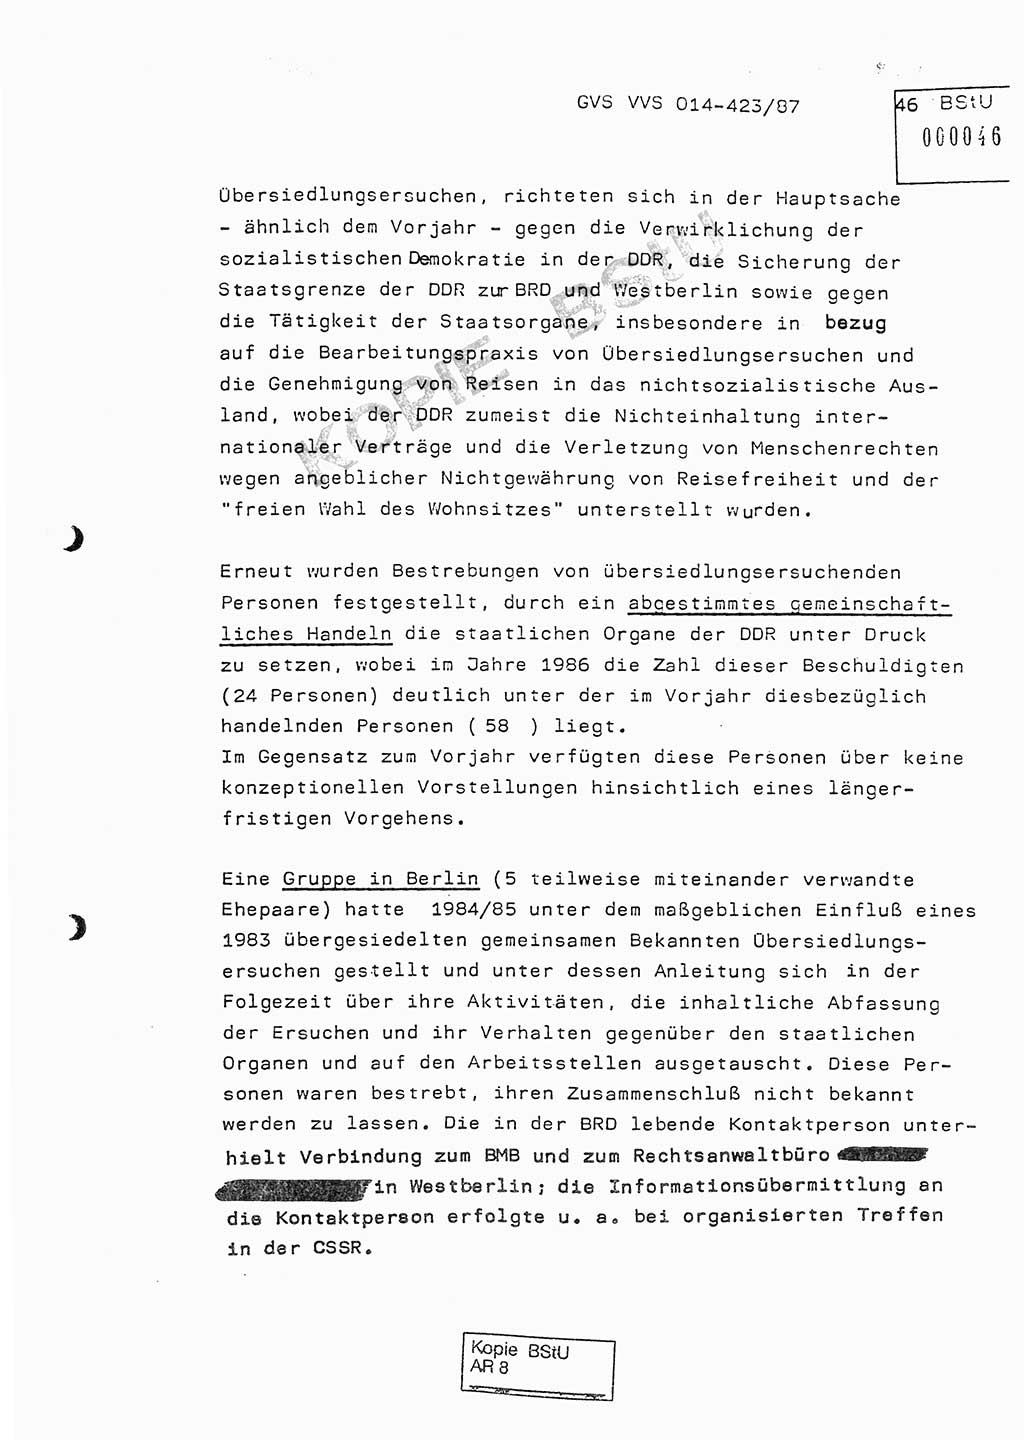 Jahresbericht der Hauptabteilung (HA) Ⅸ 1986, Einschätzung der Wirksamkeit der Untersuchungsarbeit im Jahre 1986, Ministerium für Staatssicherheit (MfS) der Deutschen Demokratischen Republik (DDR), Hauptabteilung Ⅸ, Geheime Verschlußsache (GVS) o014-423/87, Berlin 1987, Seite 46 (Einsch. MfS DDR HA Ⅸ GVS o014-423/87 1986, S. 46)